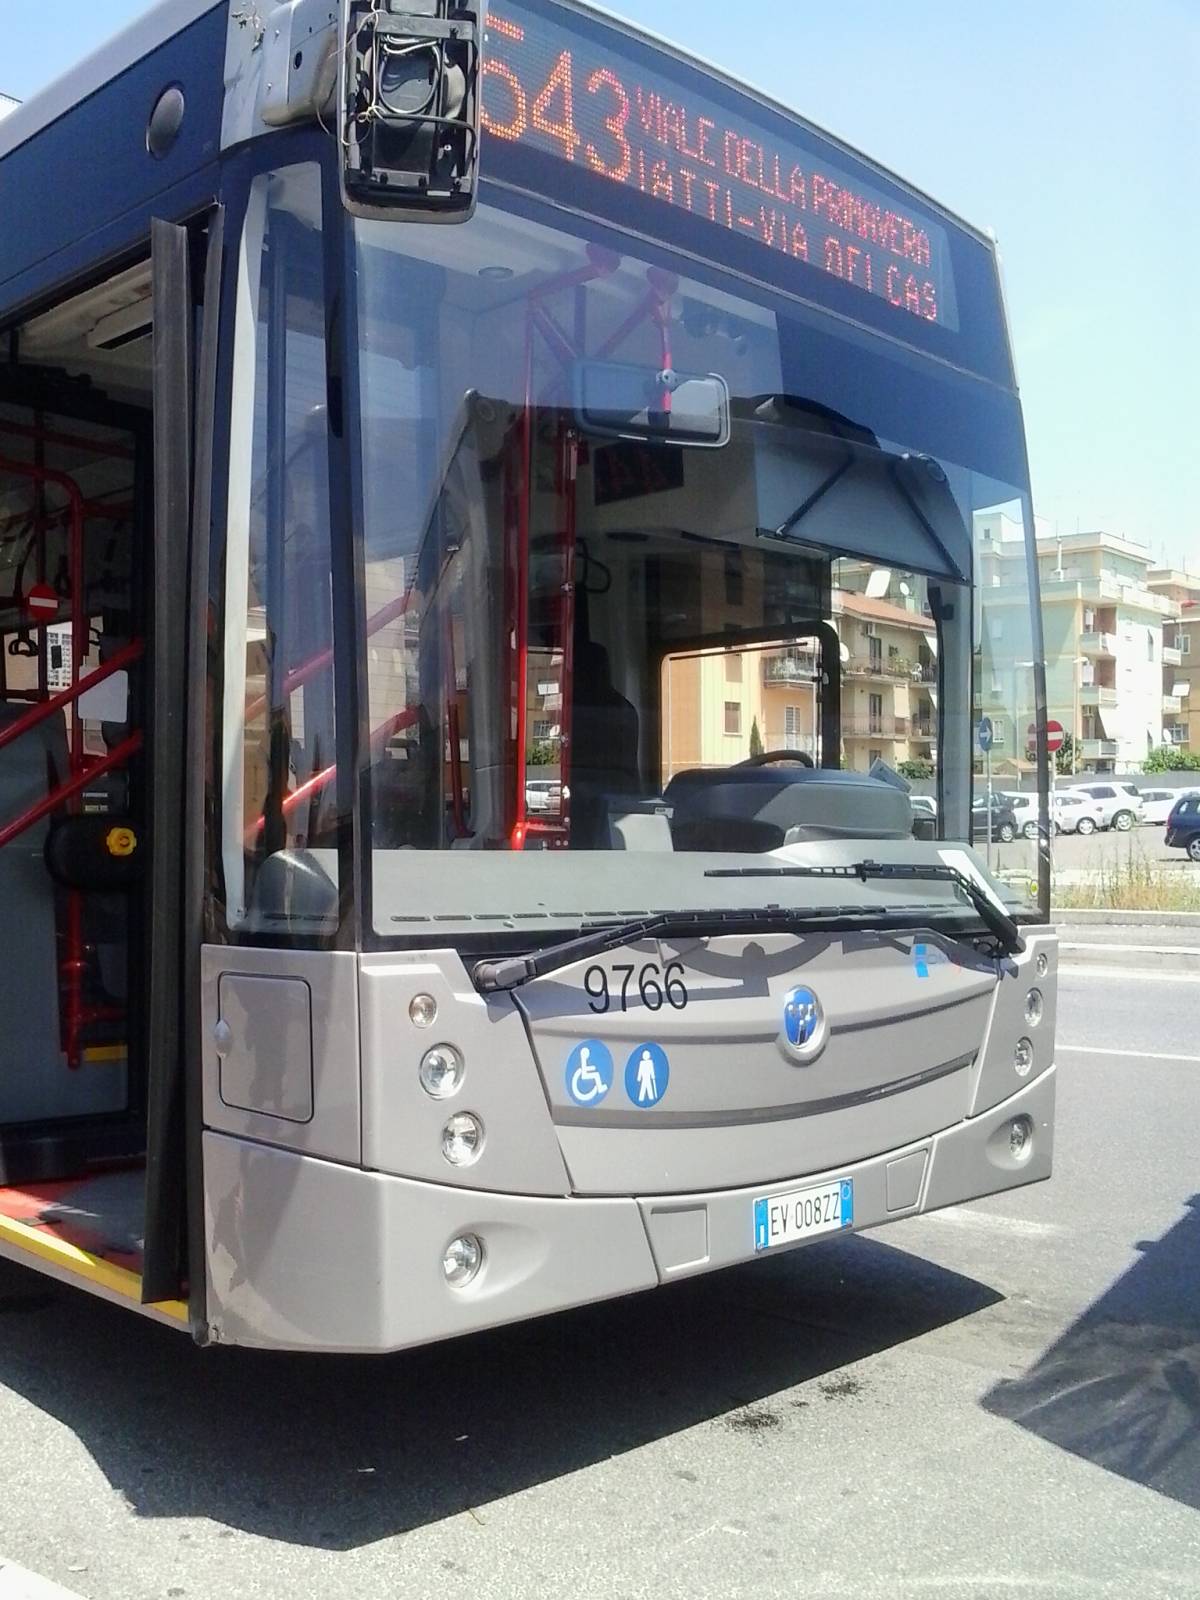 Roma come Bogotà: venti minuti di attesa per prendere il bus